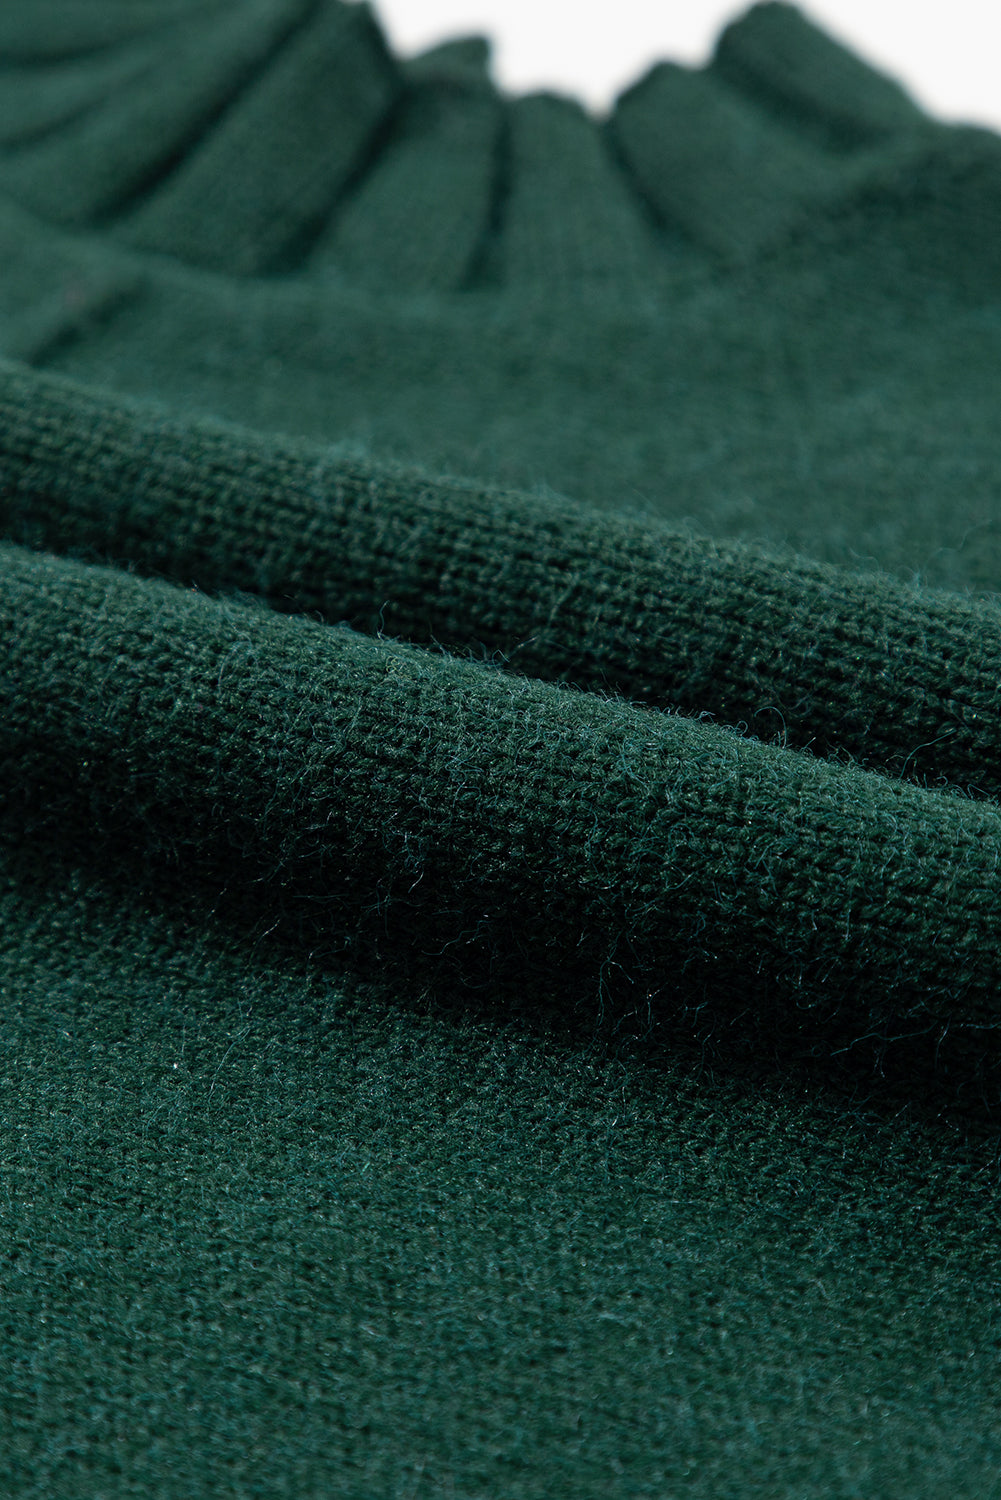 Pull en tricot gris moyen à manches courtes et col montant chauve-souris